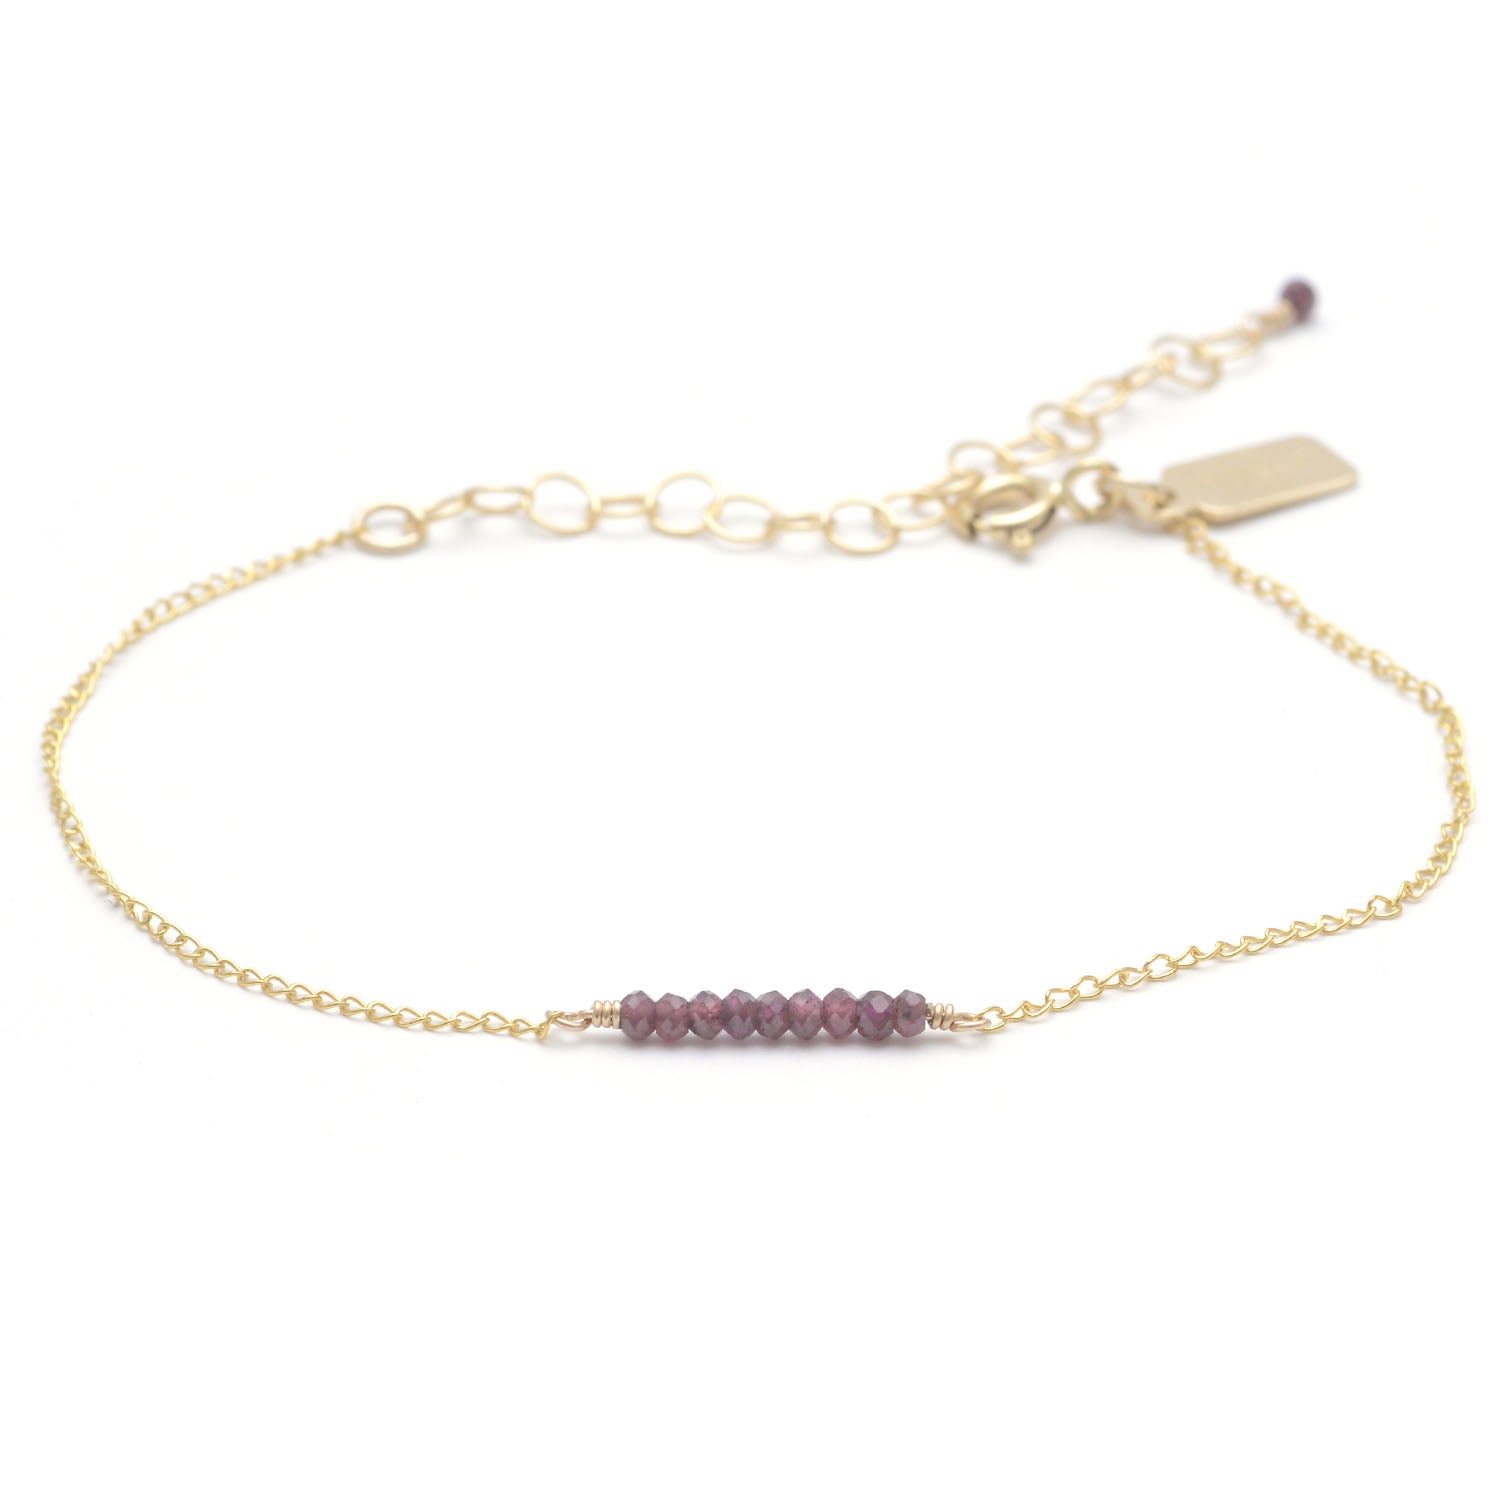 Tiny Garnet Bracelet - Favor Jewelry